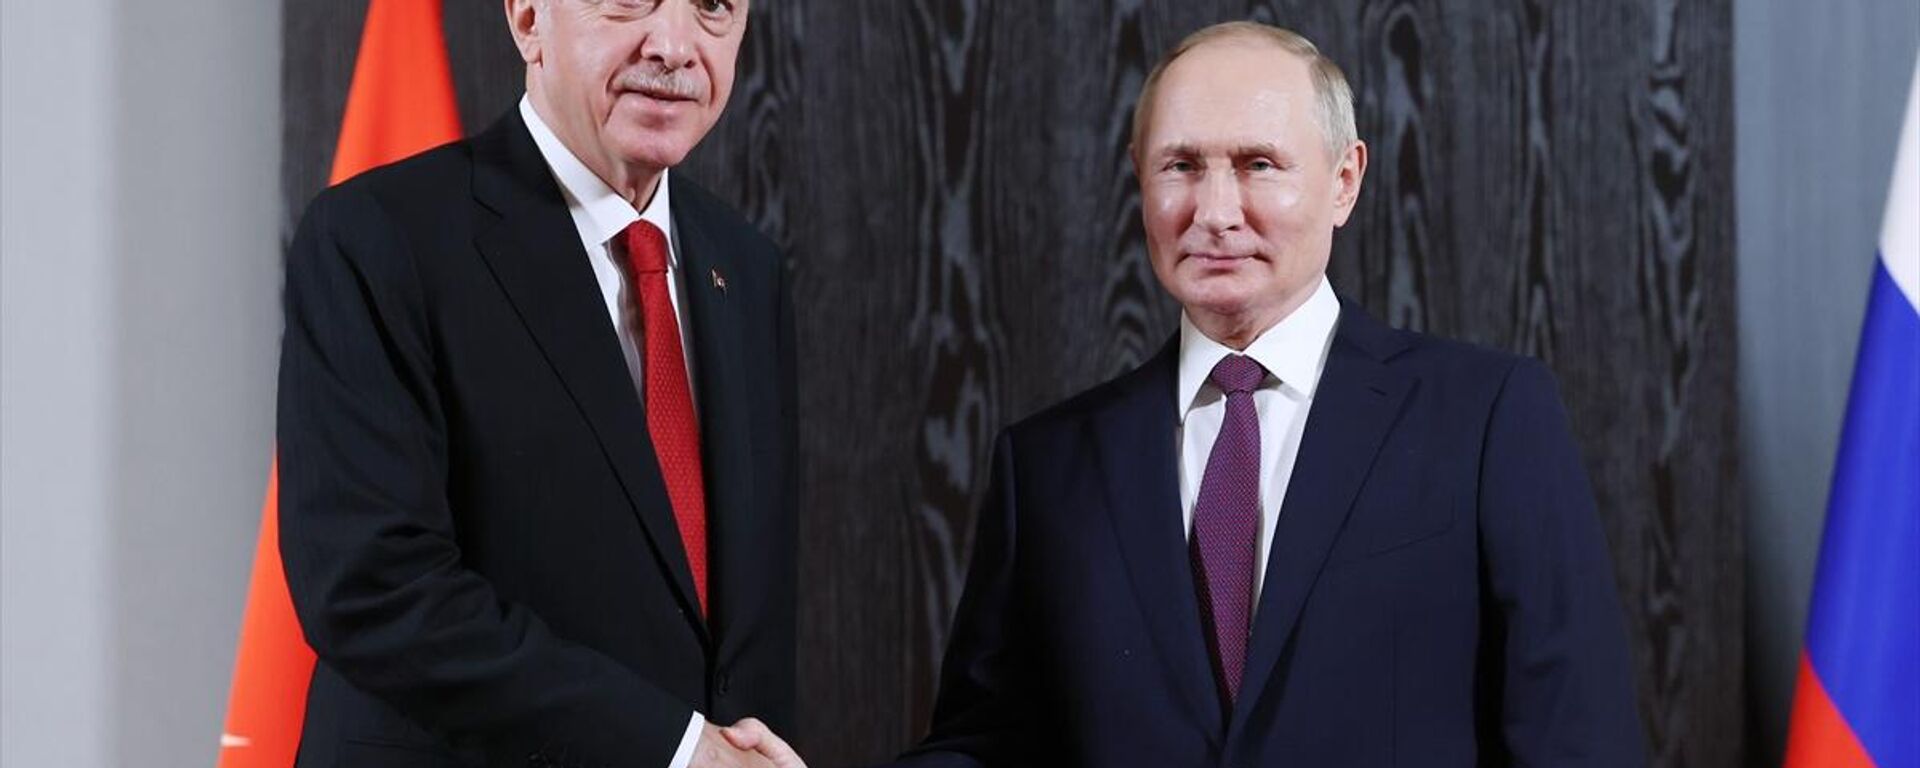 Cumhurbaşkanı Erdoğan'ın, Rusya Devlet Başkanı Putin ile görüştü - Sputnik Türkiye, 1920, 16.09.2022